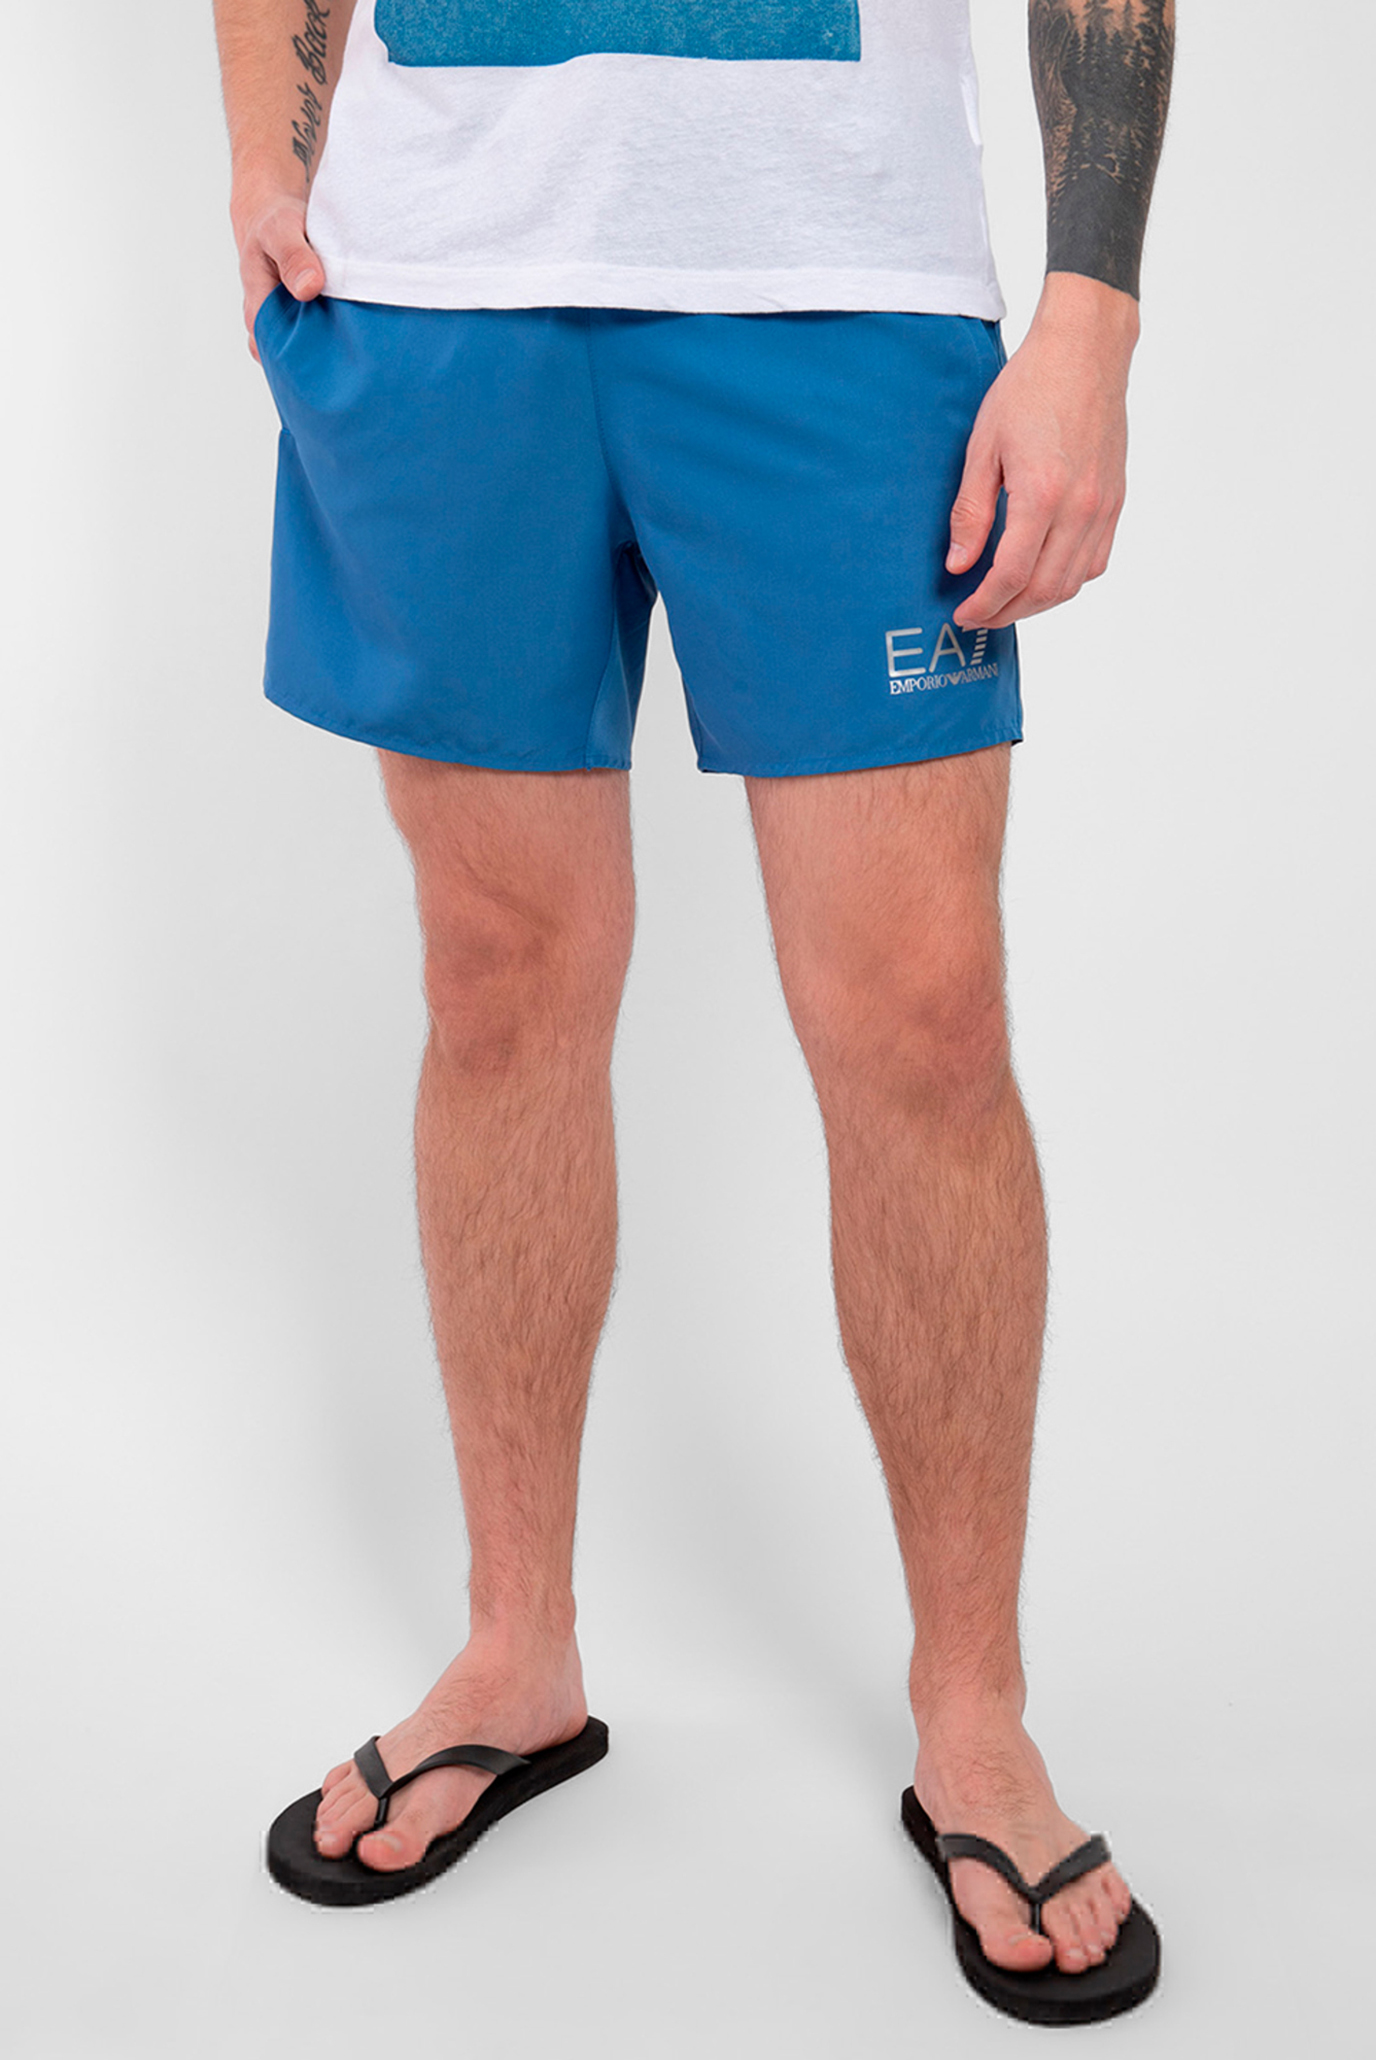 Мужские голубые плавательные шорты 1